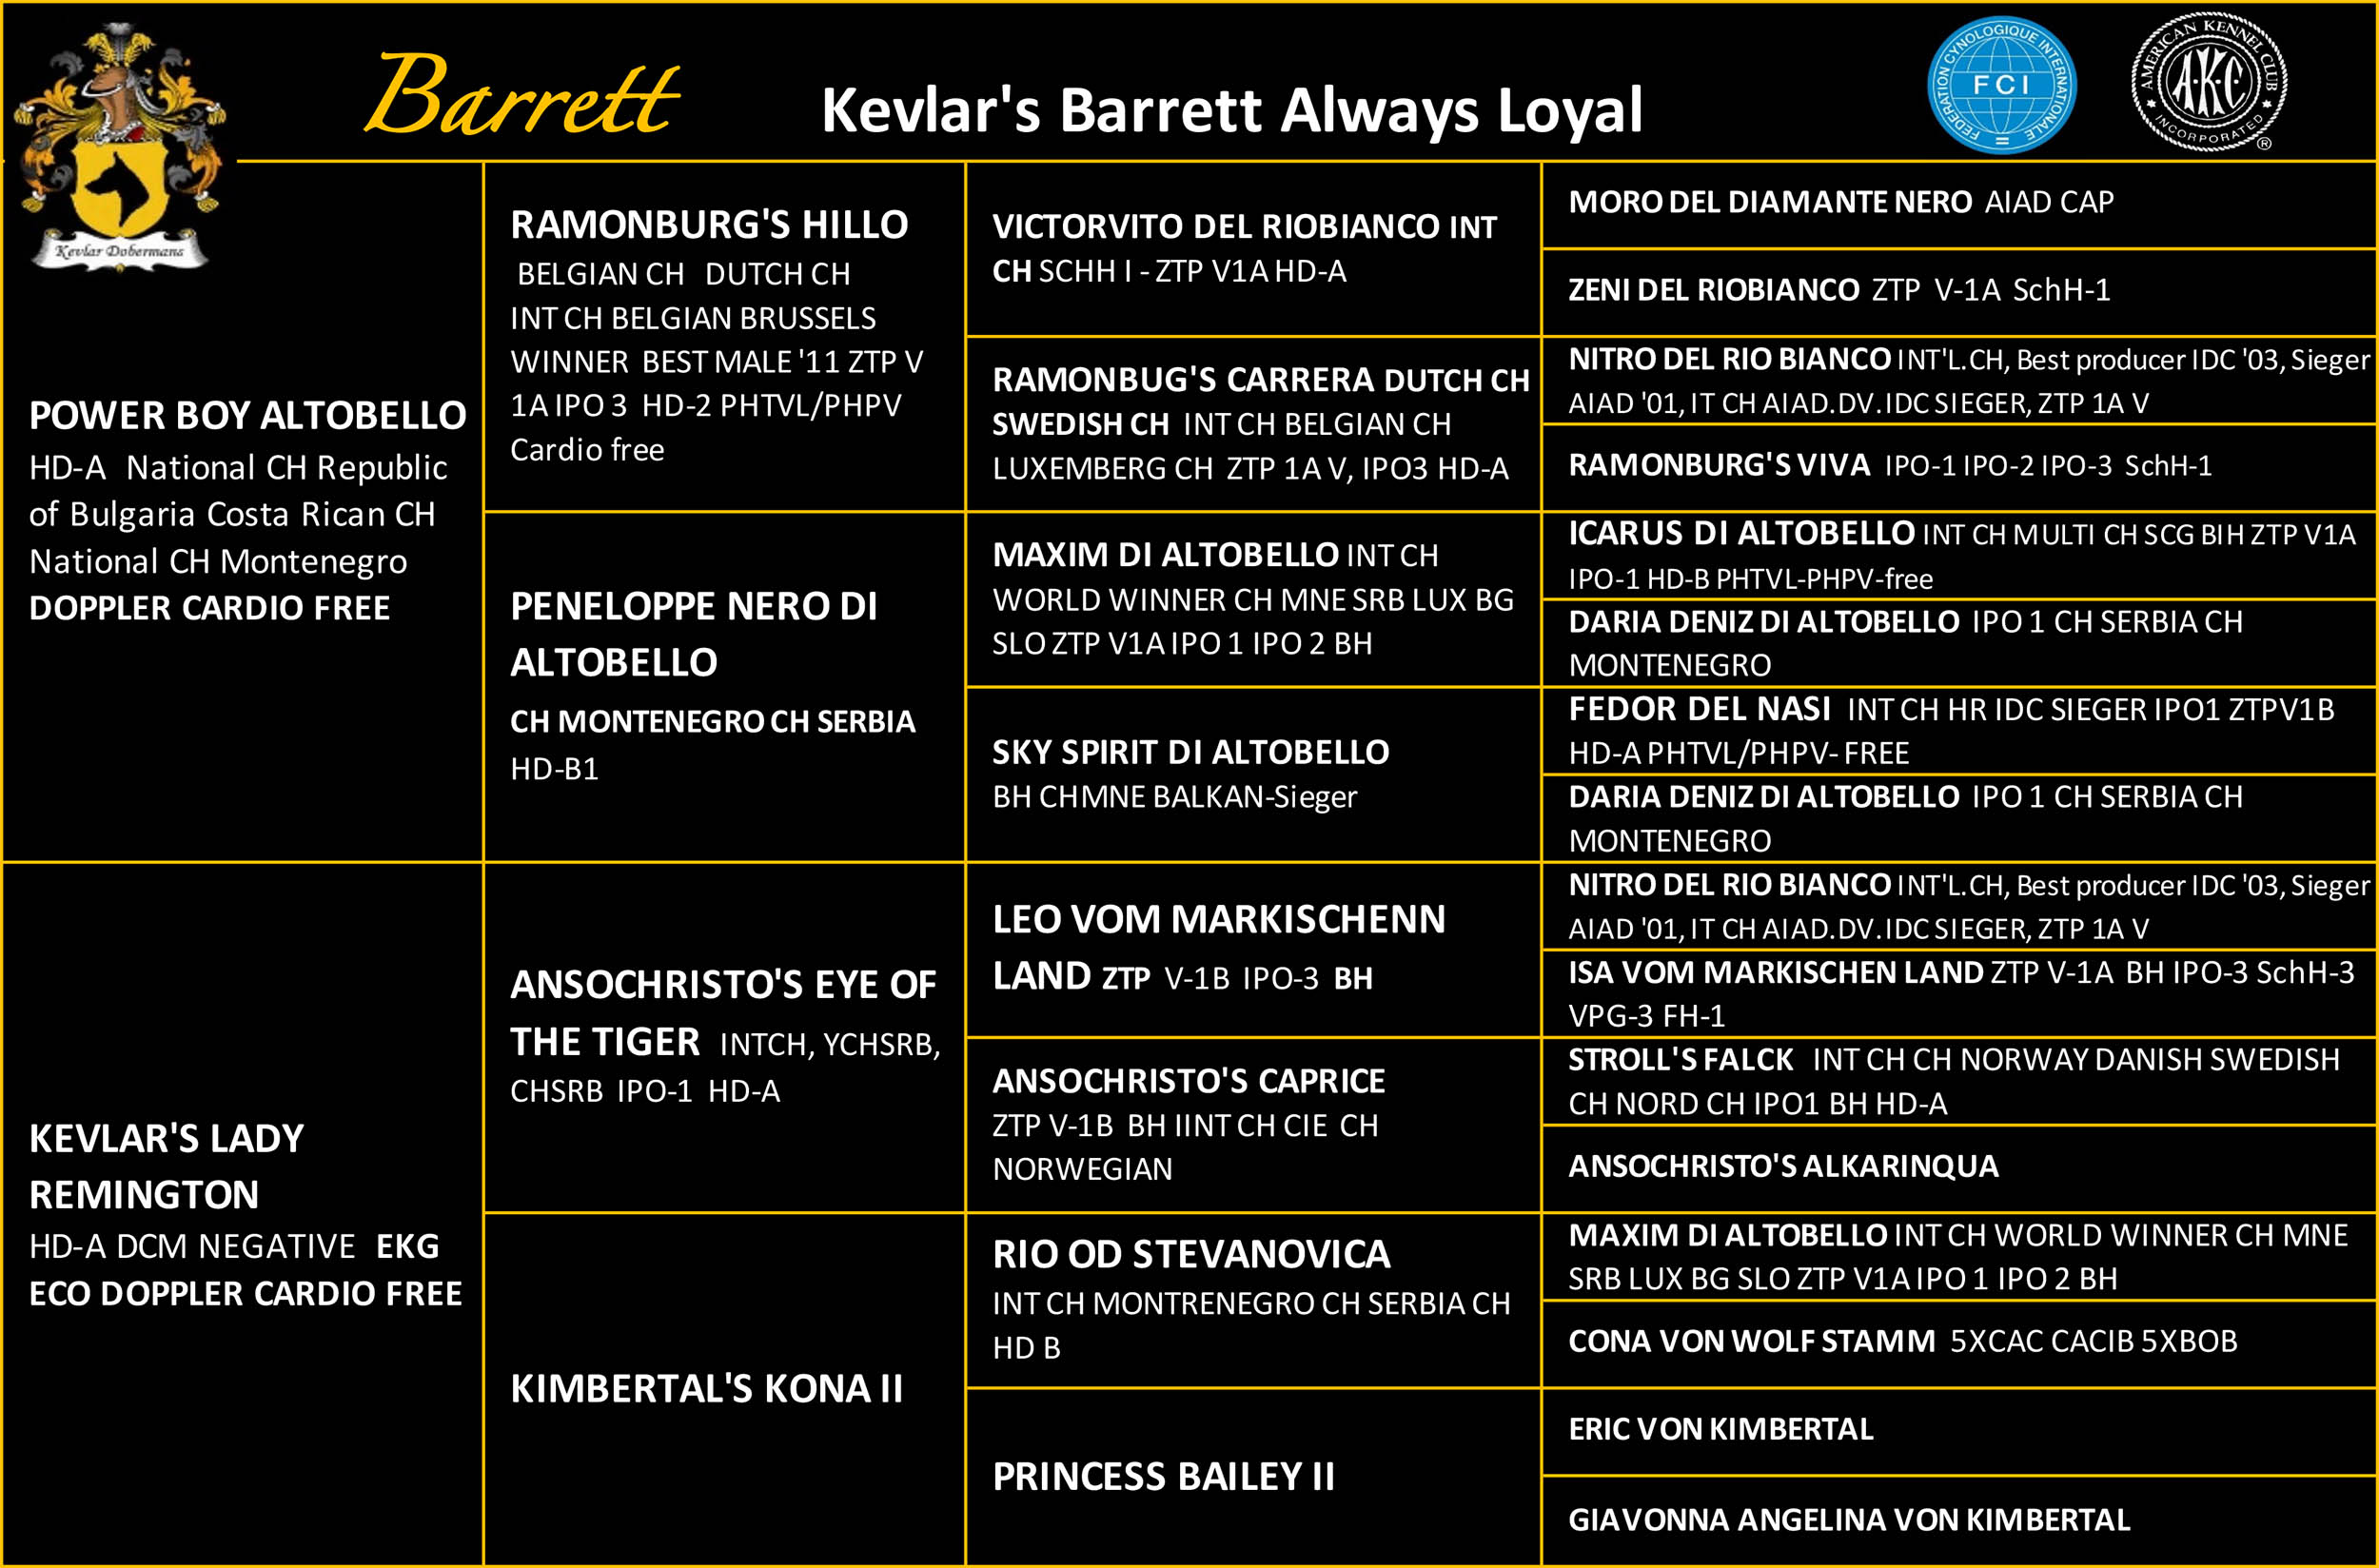 Kevlar's Barrett Always Loyal